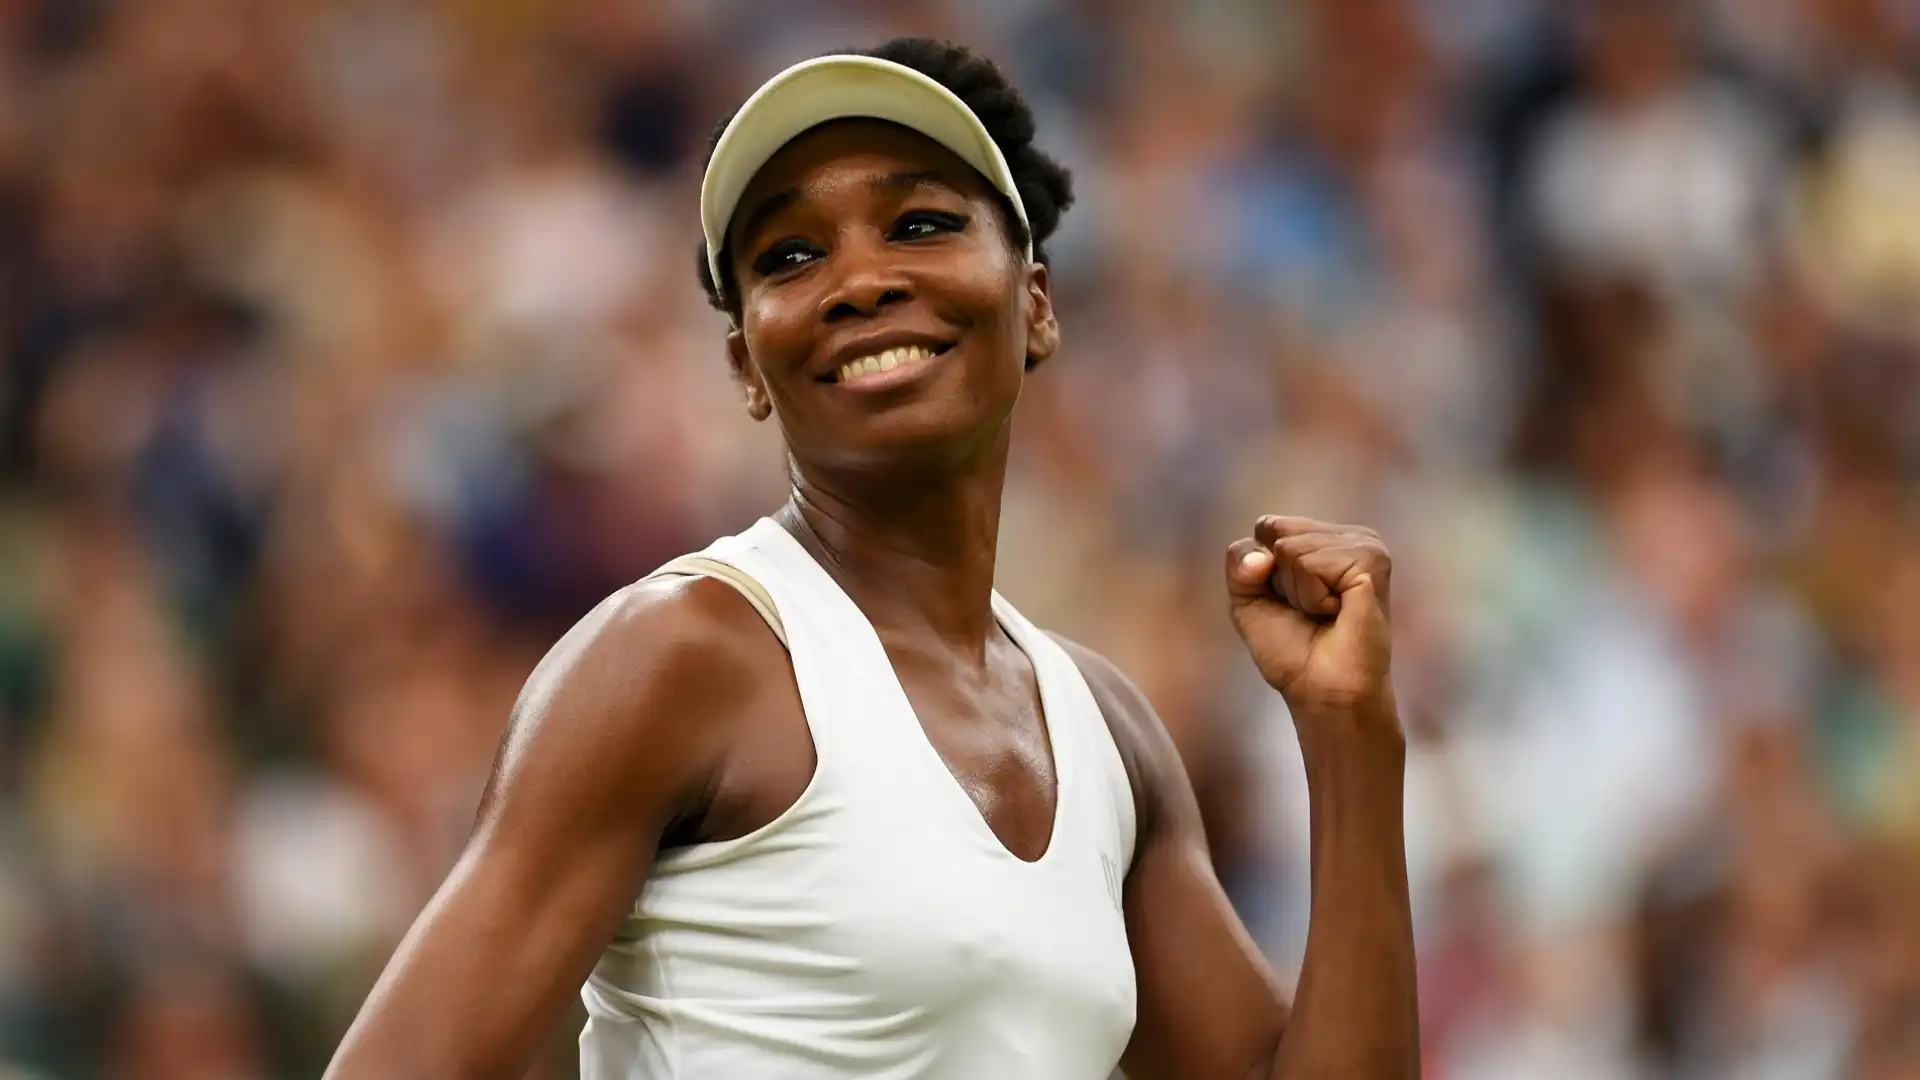 Venus Williams (Tennis, Stati Uniti): patrimonio netto stimato 95 milioni di dollari. La prima tennista afroamericana numero uno del mondo